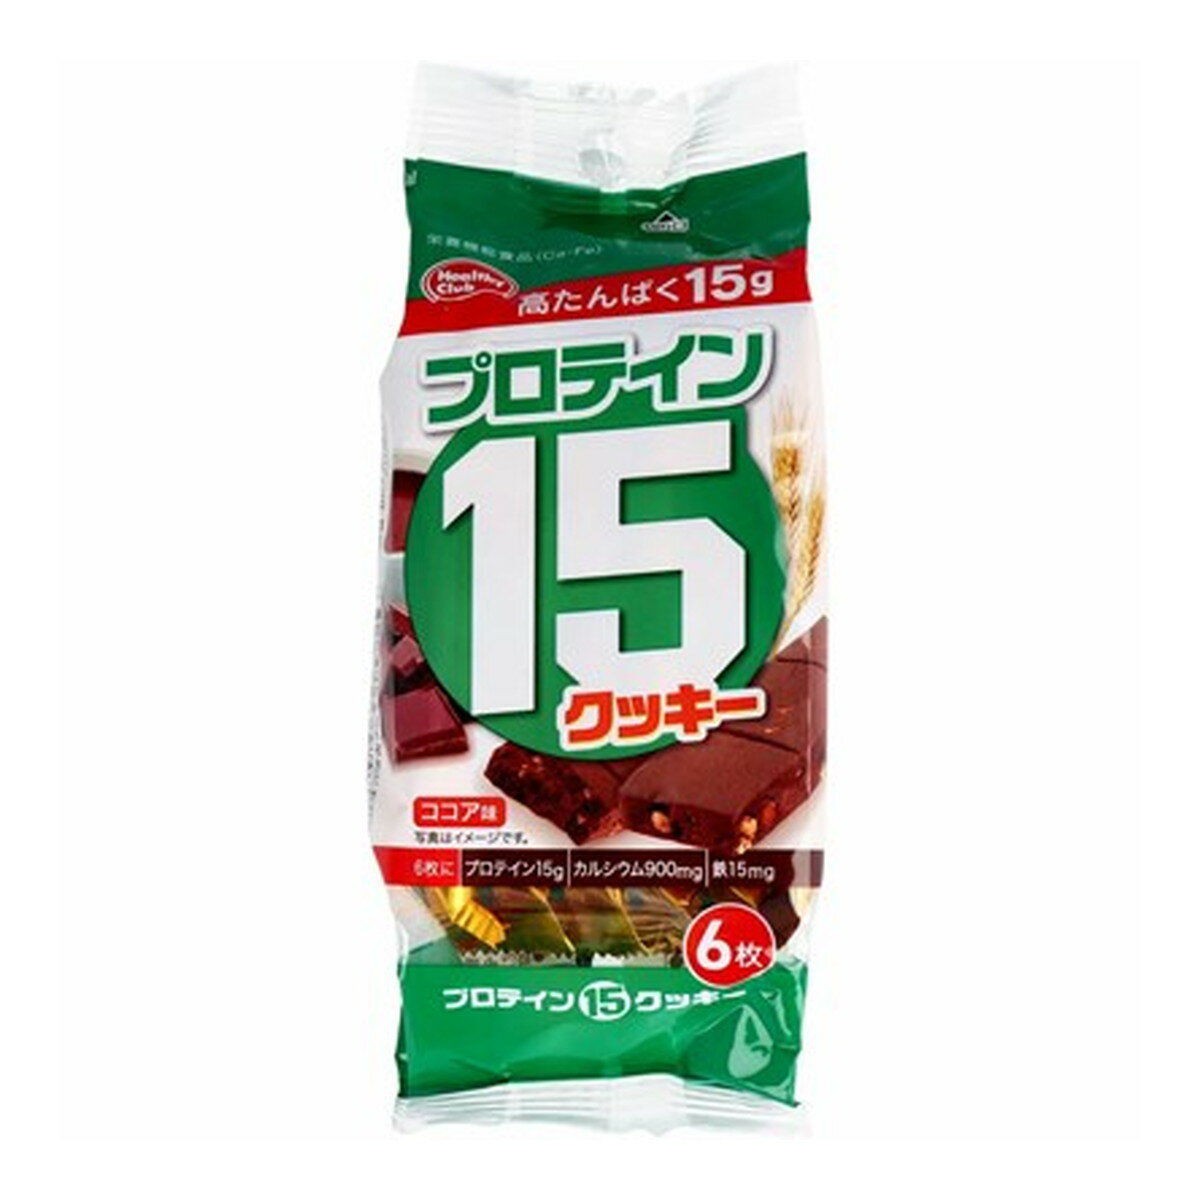 【オータムセール】ハマダコンフェクト プロテイン15 クッキー ココア味 6枚入